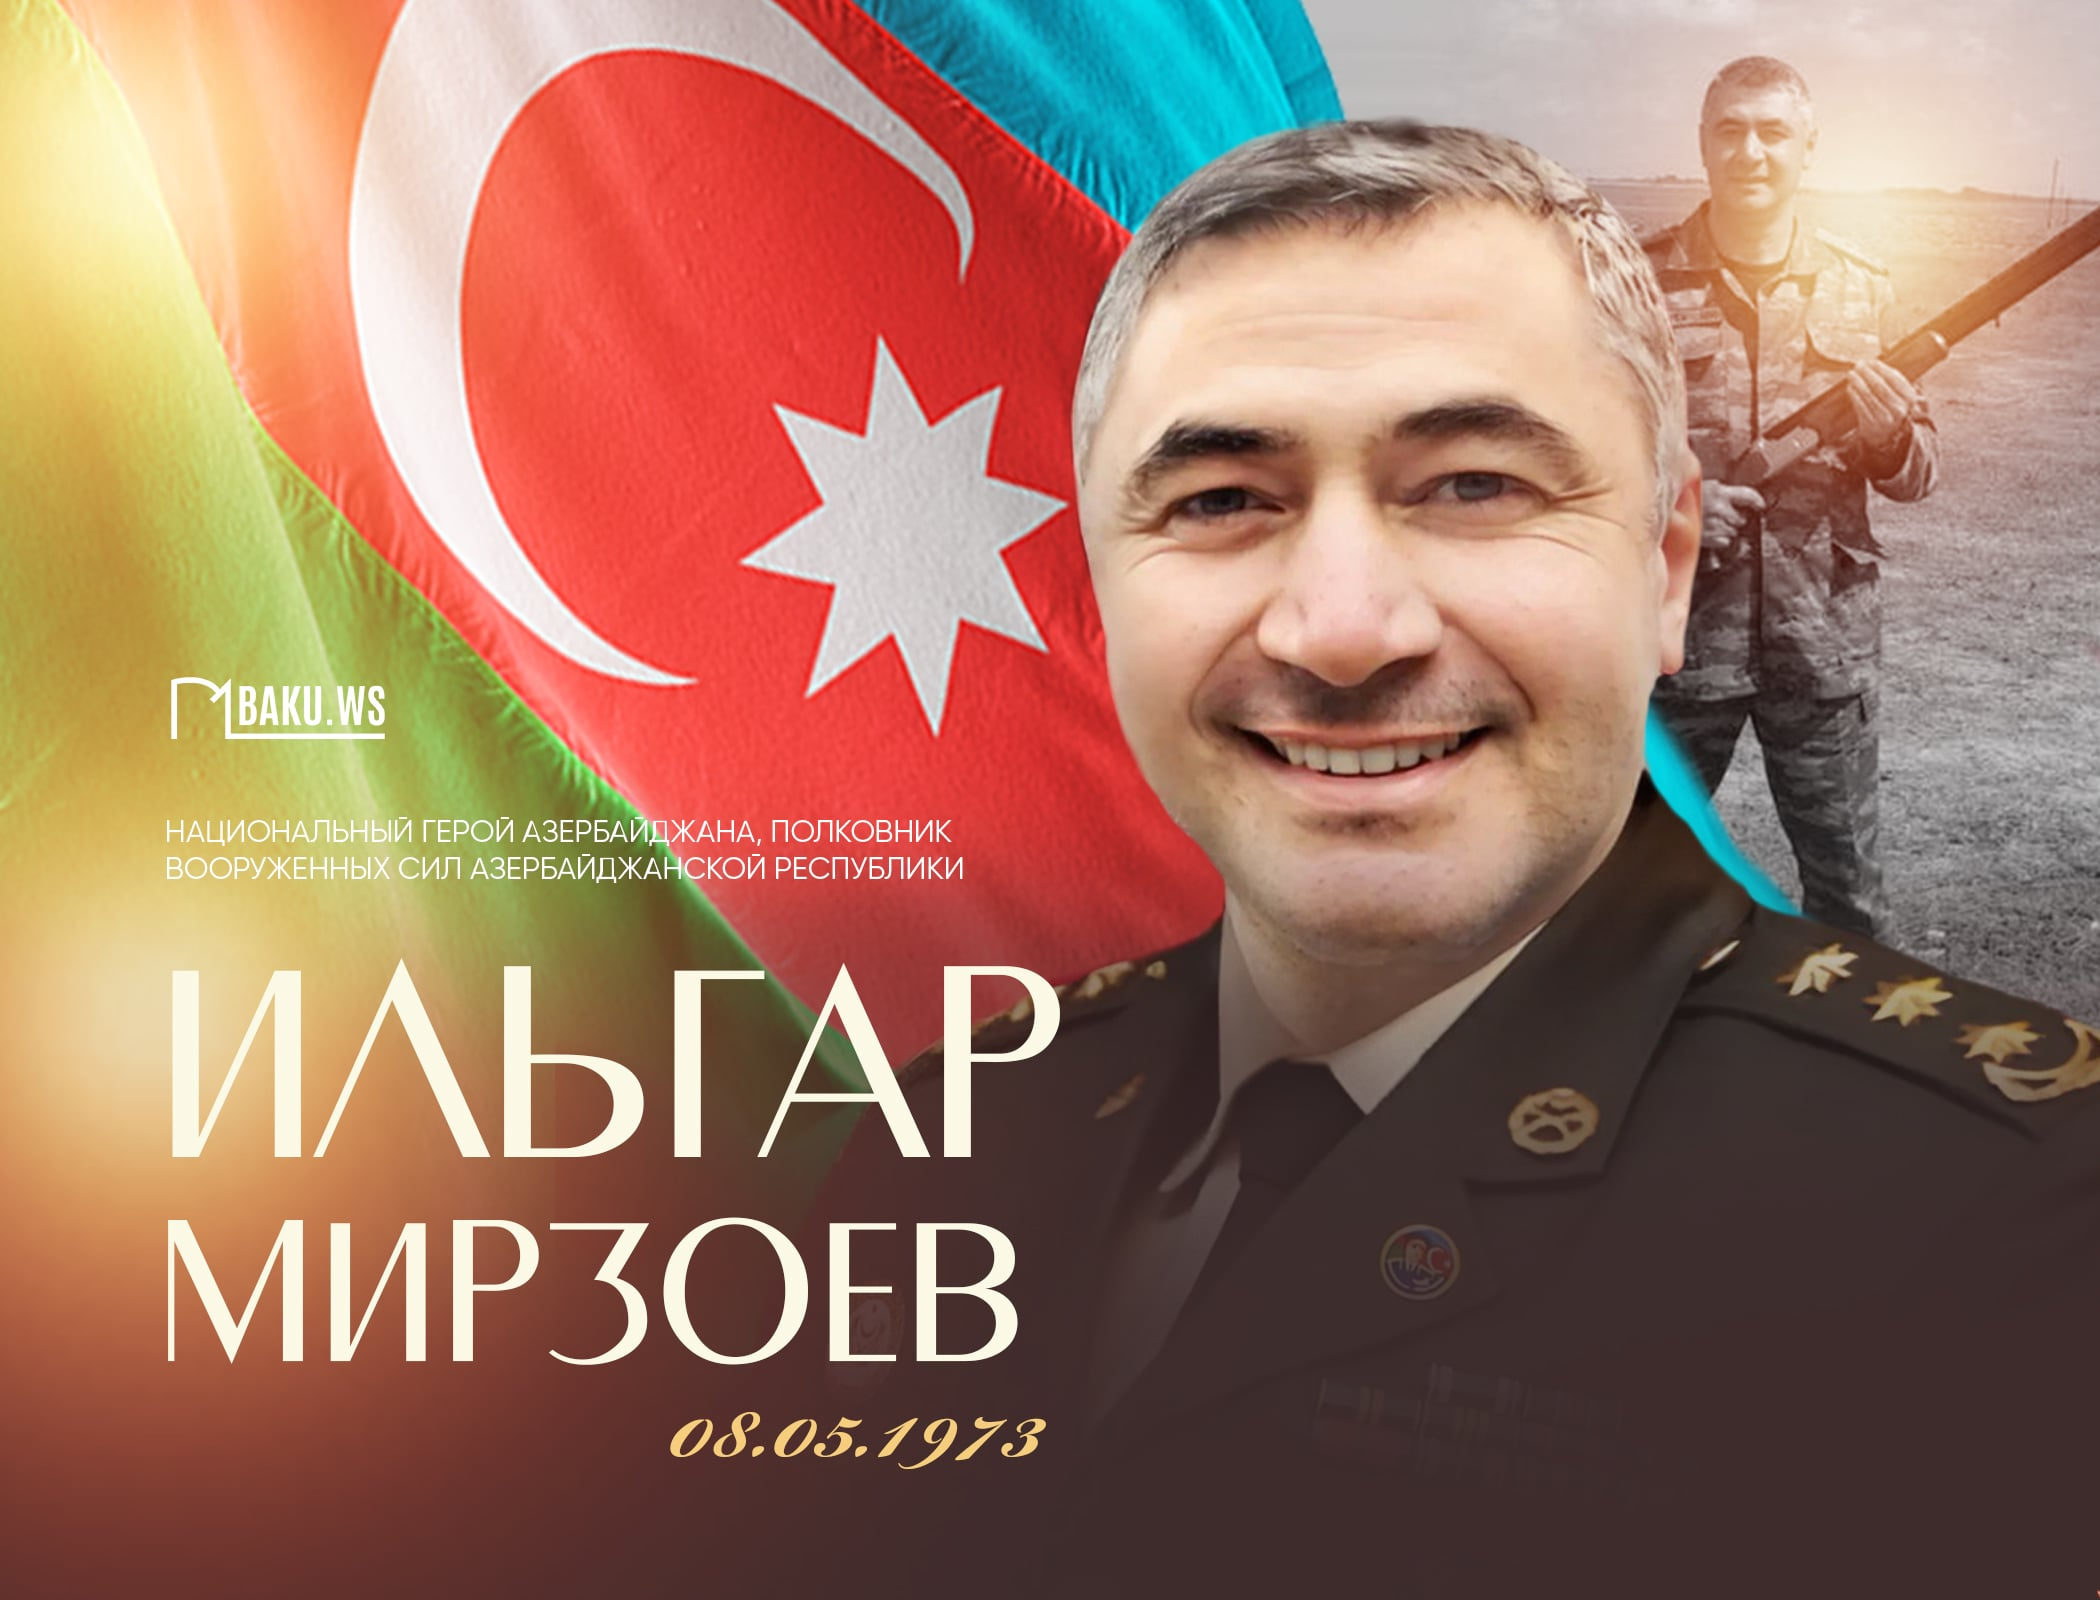 Сегодня день рождения Национального героя Азербайджана Ильгара Мирзоева